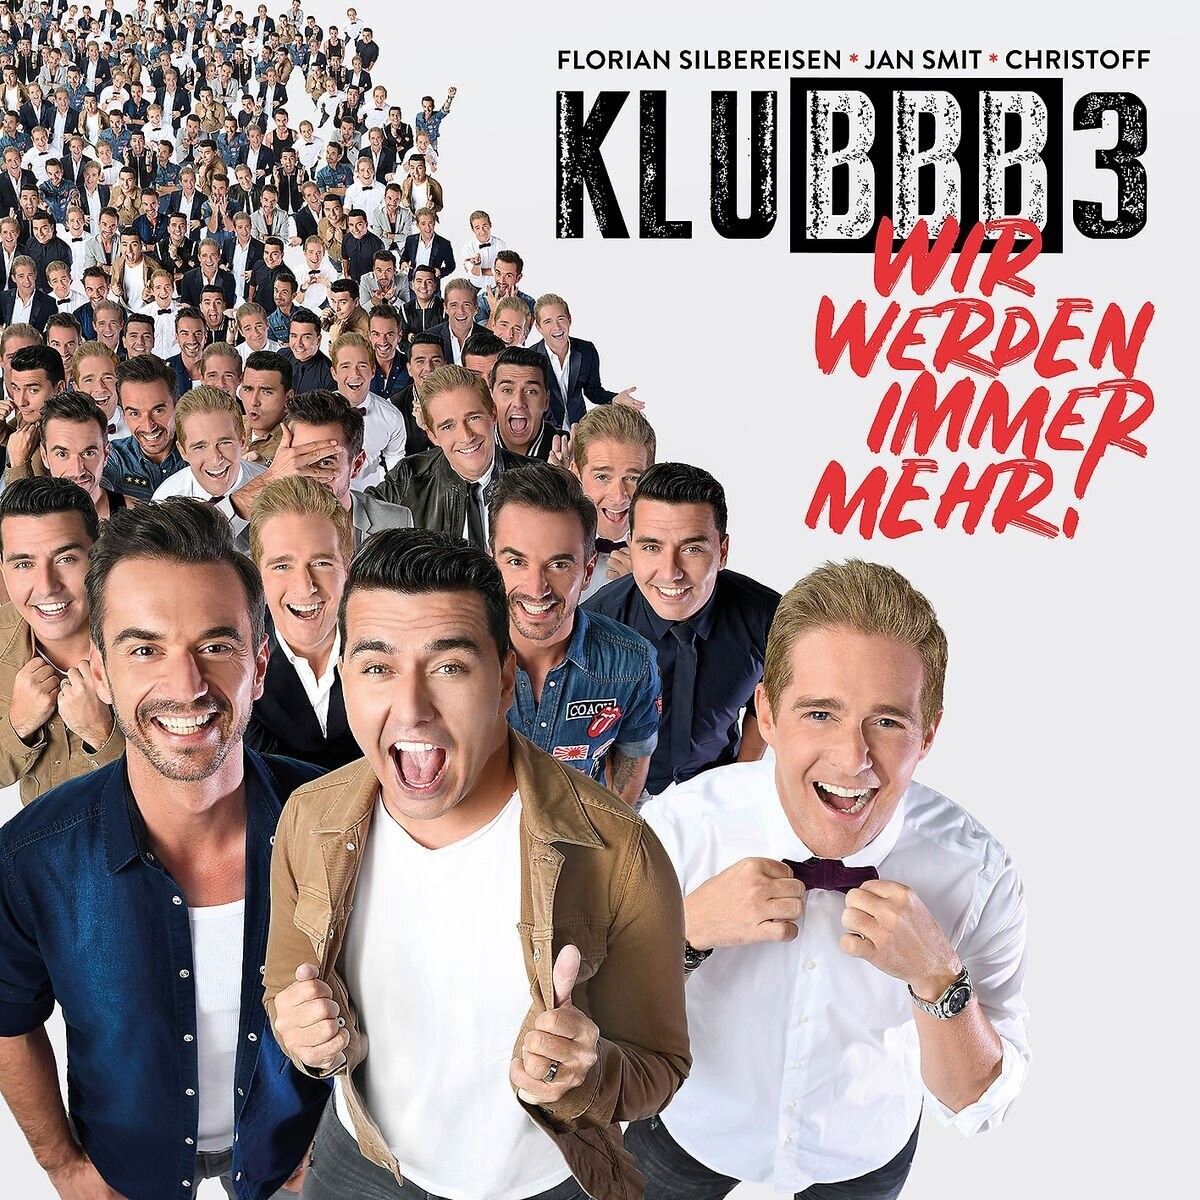 Klubbb3 - Wir Werden Immer Mehr! (2018) CD